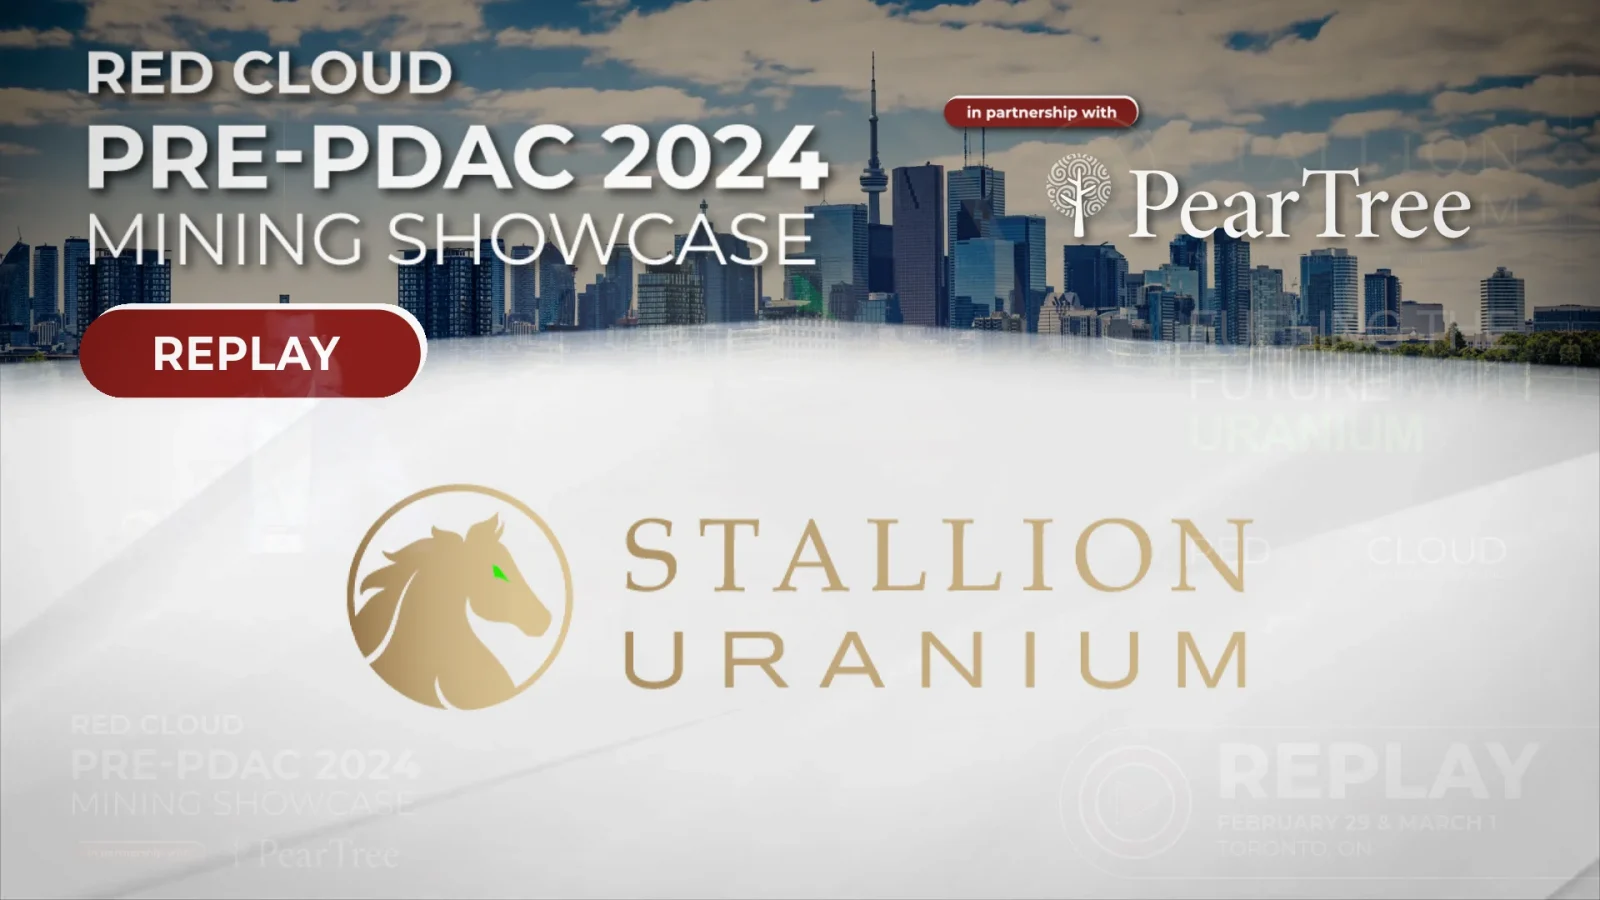 Stallion uranium _ Replay